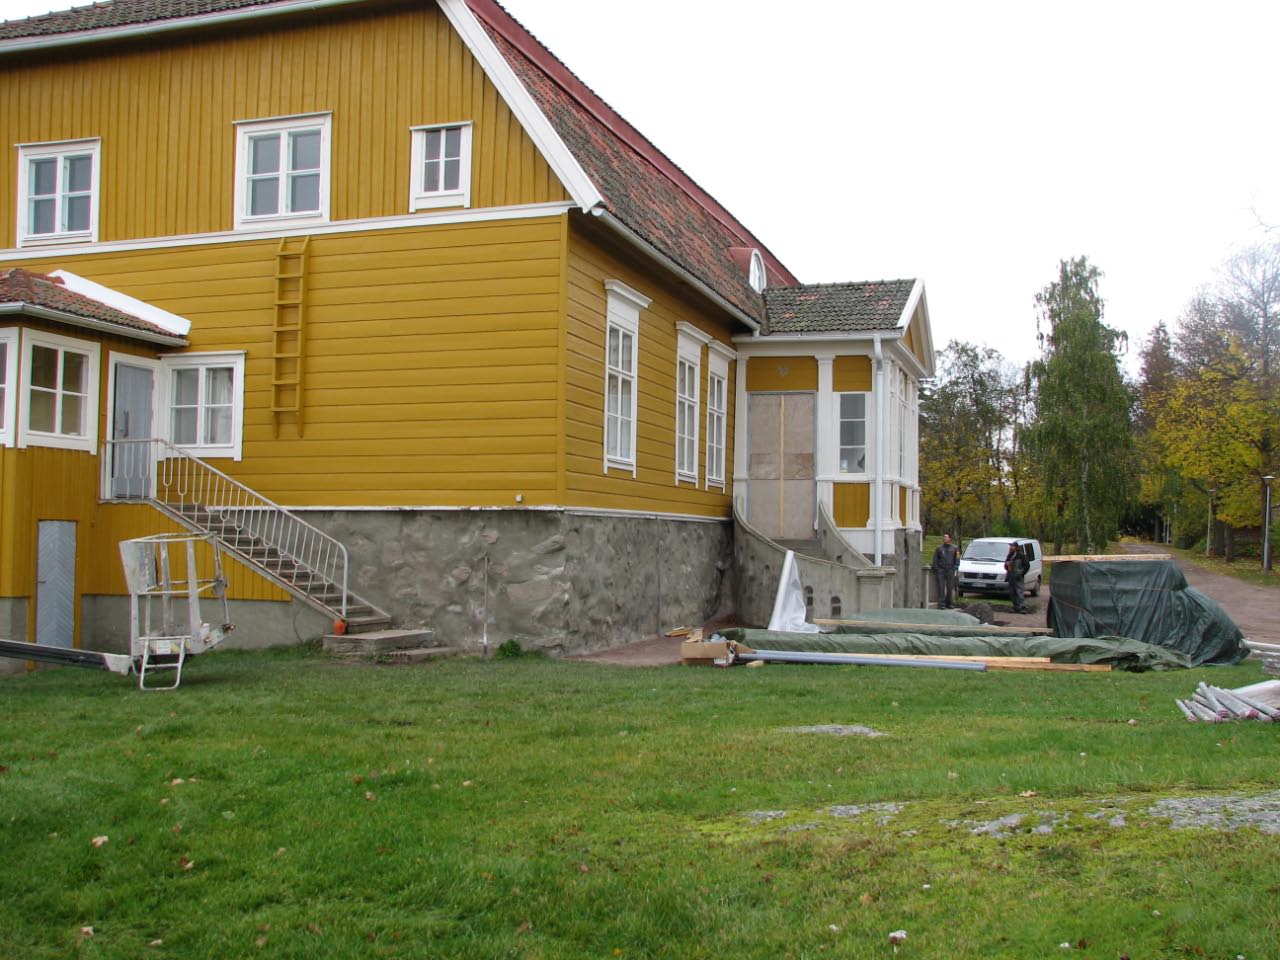 Kuva: Päärakennuksen remontti käynnissä, kuvattu lounaasta. Teija Tiitinen 18.11.2007